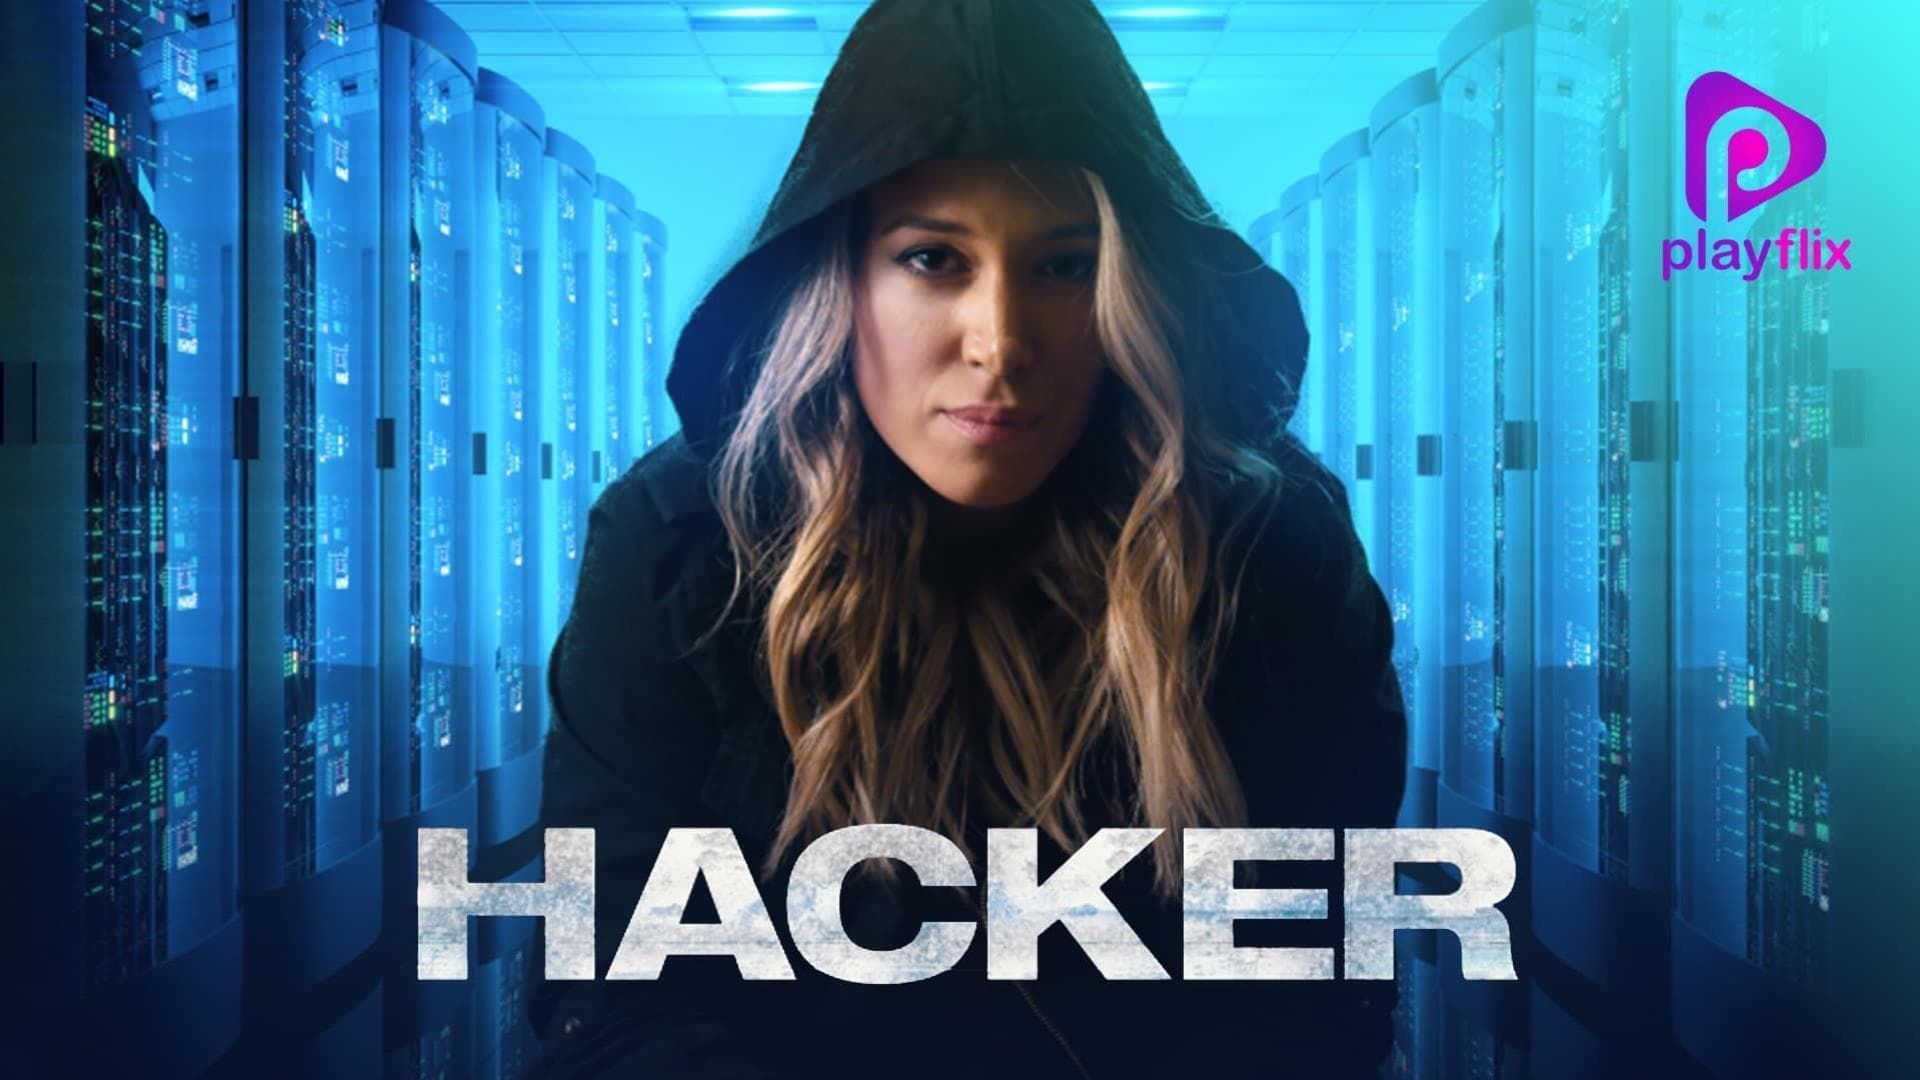 Hacker background